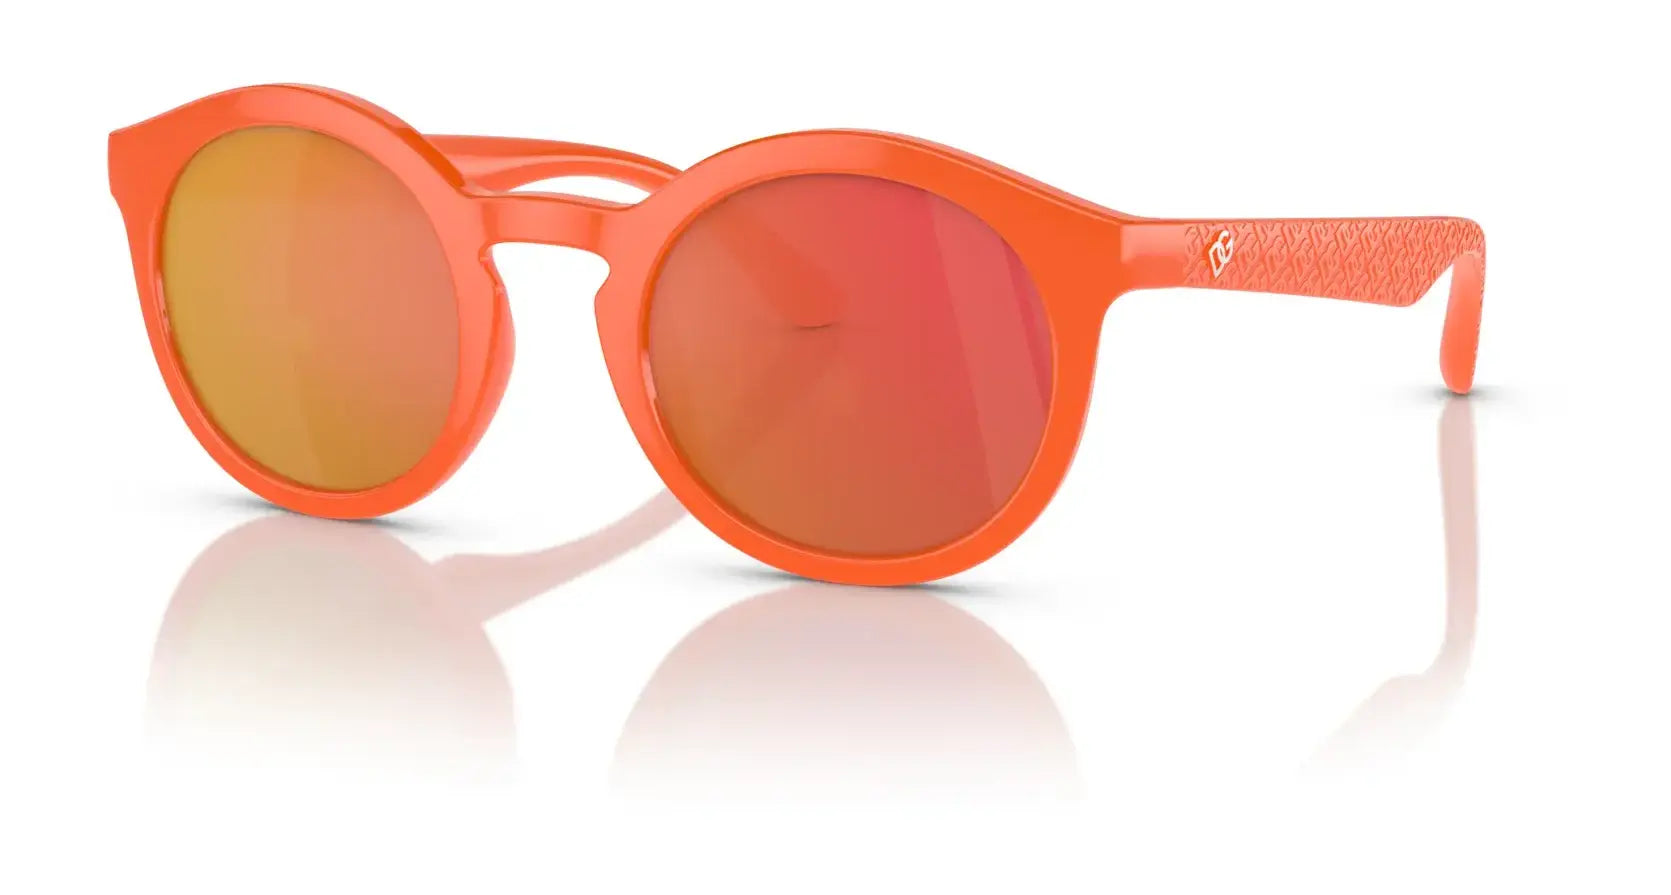 Dolce&Gabbana DX6002 Sunglasses Orange / Dark Violet Mirror Red